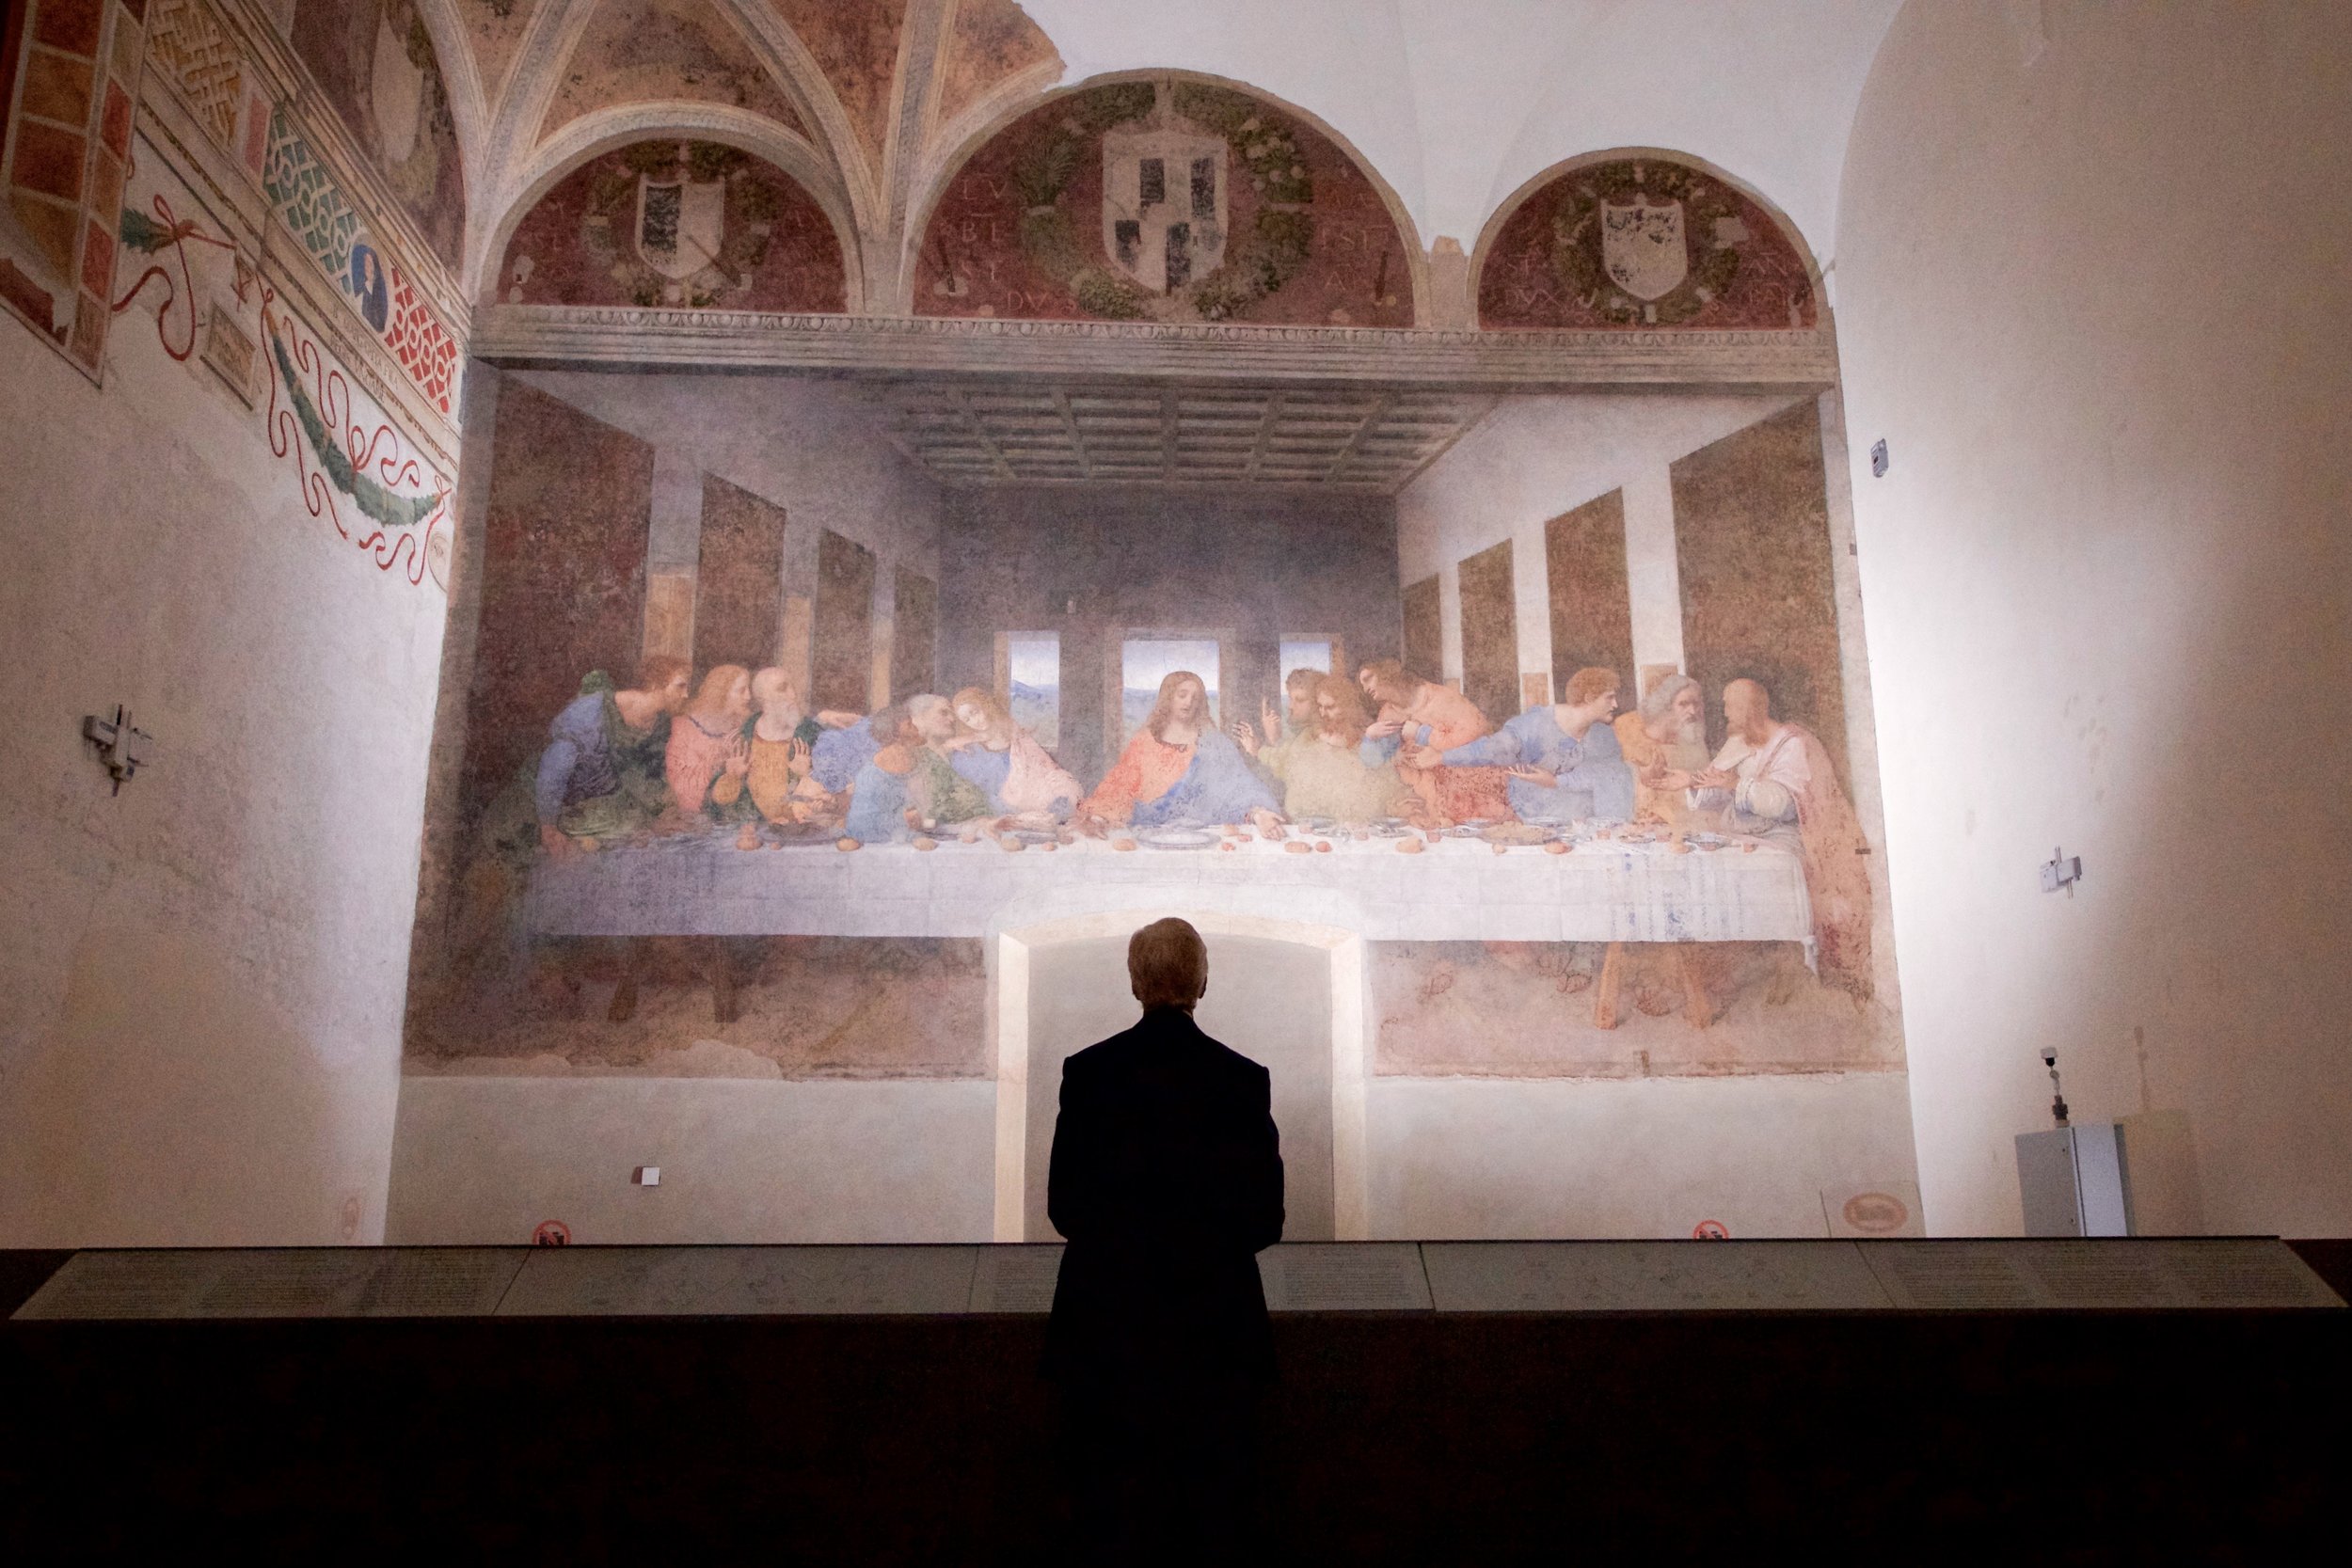  Surveying Leonardo’s  Last Supper  during a break in meetings in Milan, Italy. 